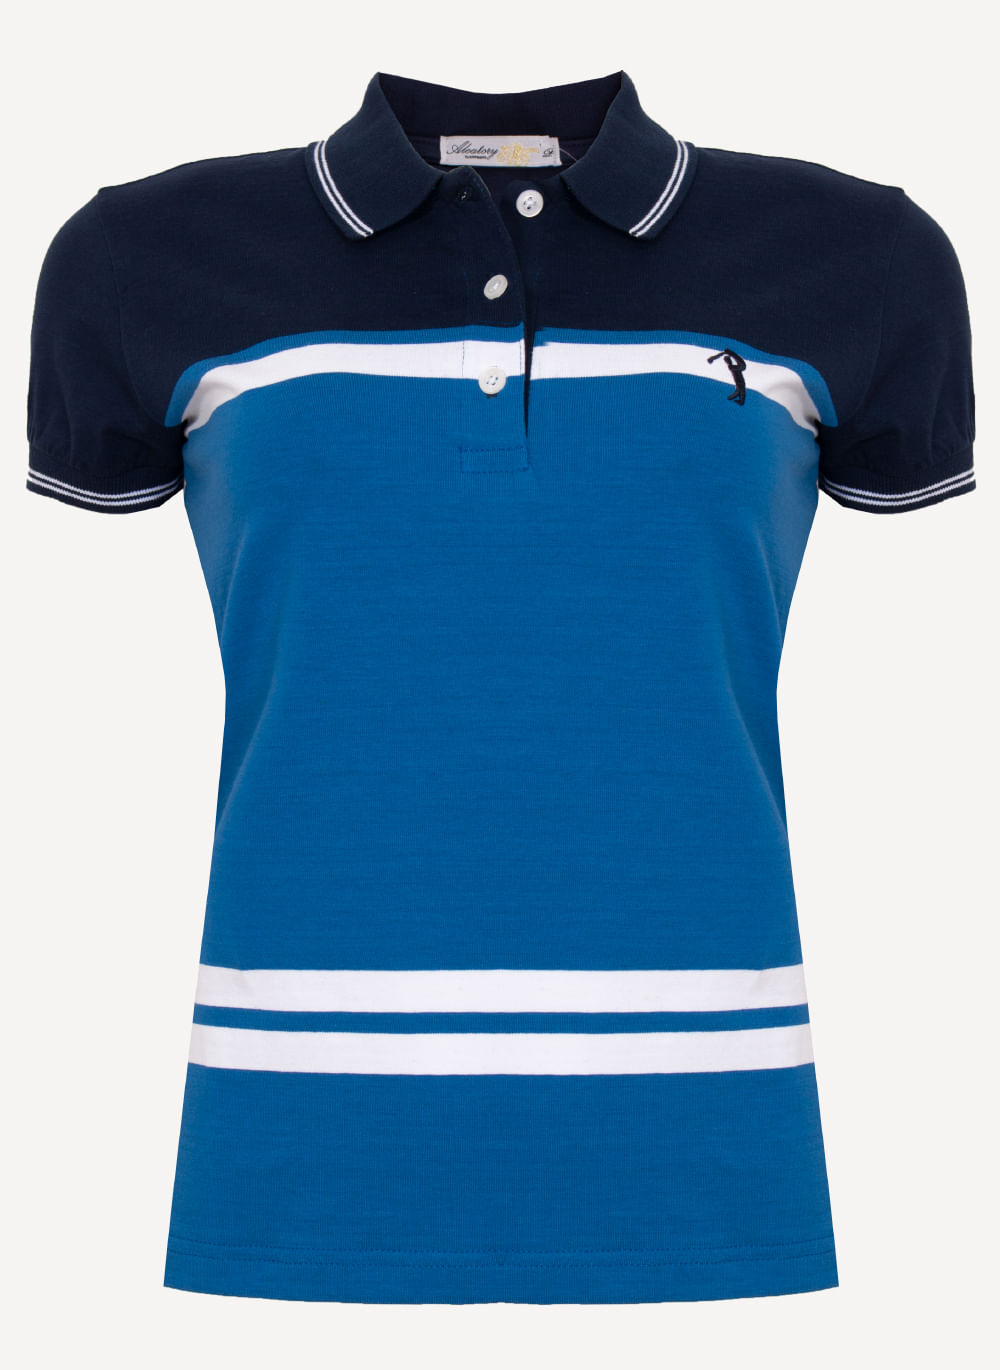 Camisa-Polo-Aleatory-Feminina-Loos-Marinho-Azul-Marinho-M